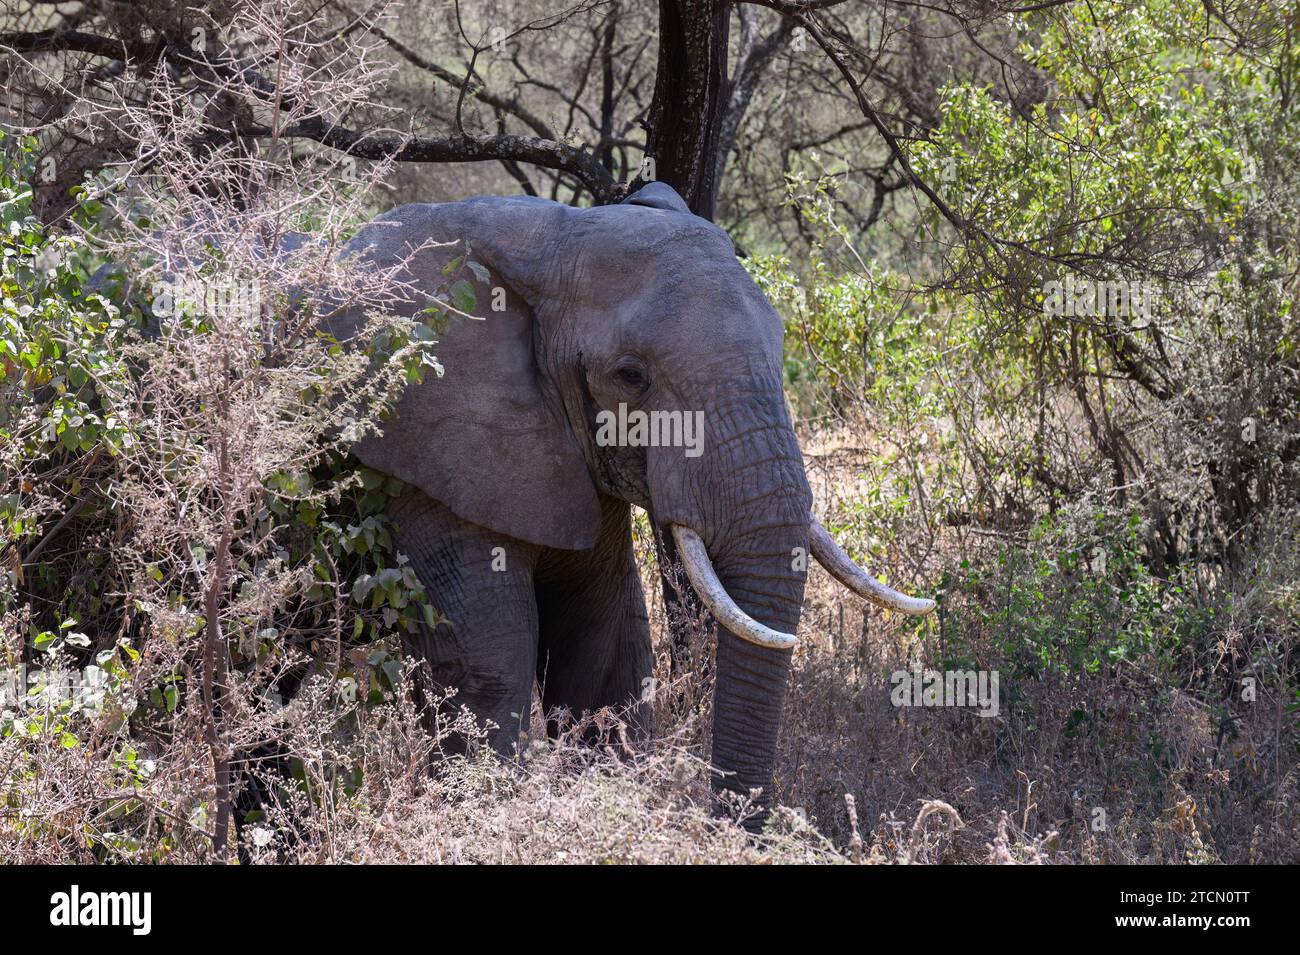 Großer männlicher afrikanischer Elefant mit Stoßzähnen in Musth, im Schatten eines Baumes, Ngorongoro-Krator, Tansania, Afrika. Stockfoto